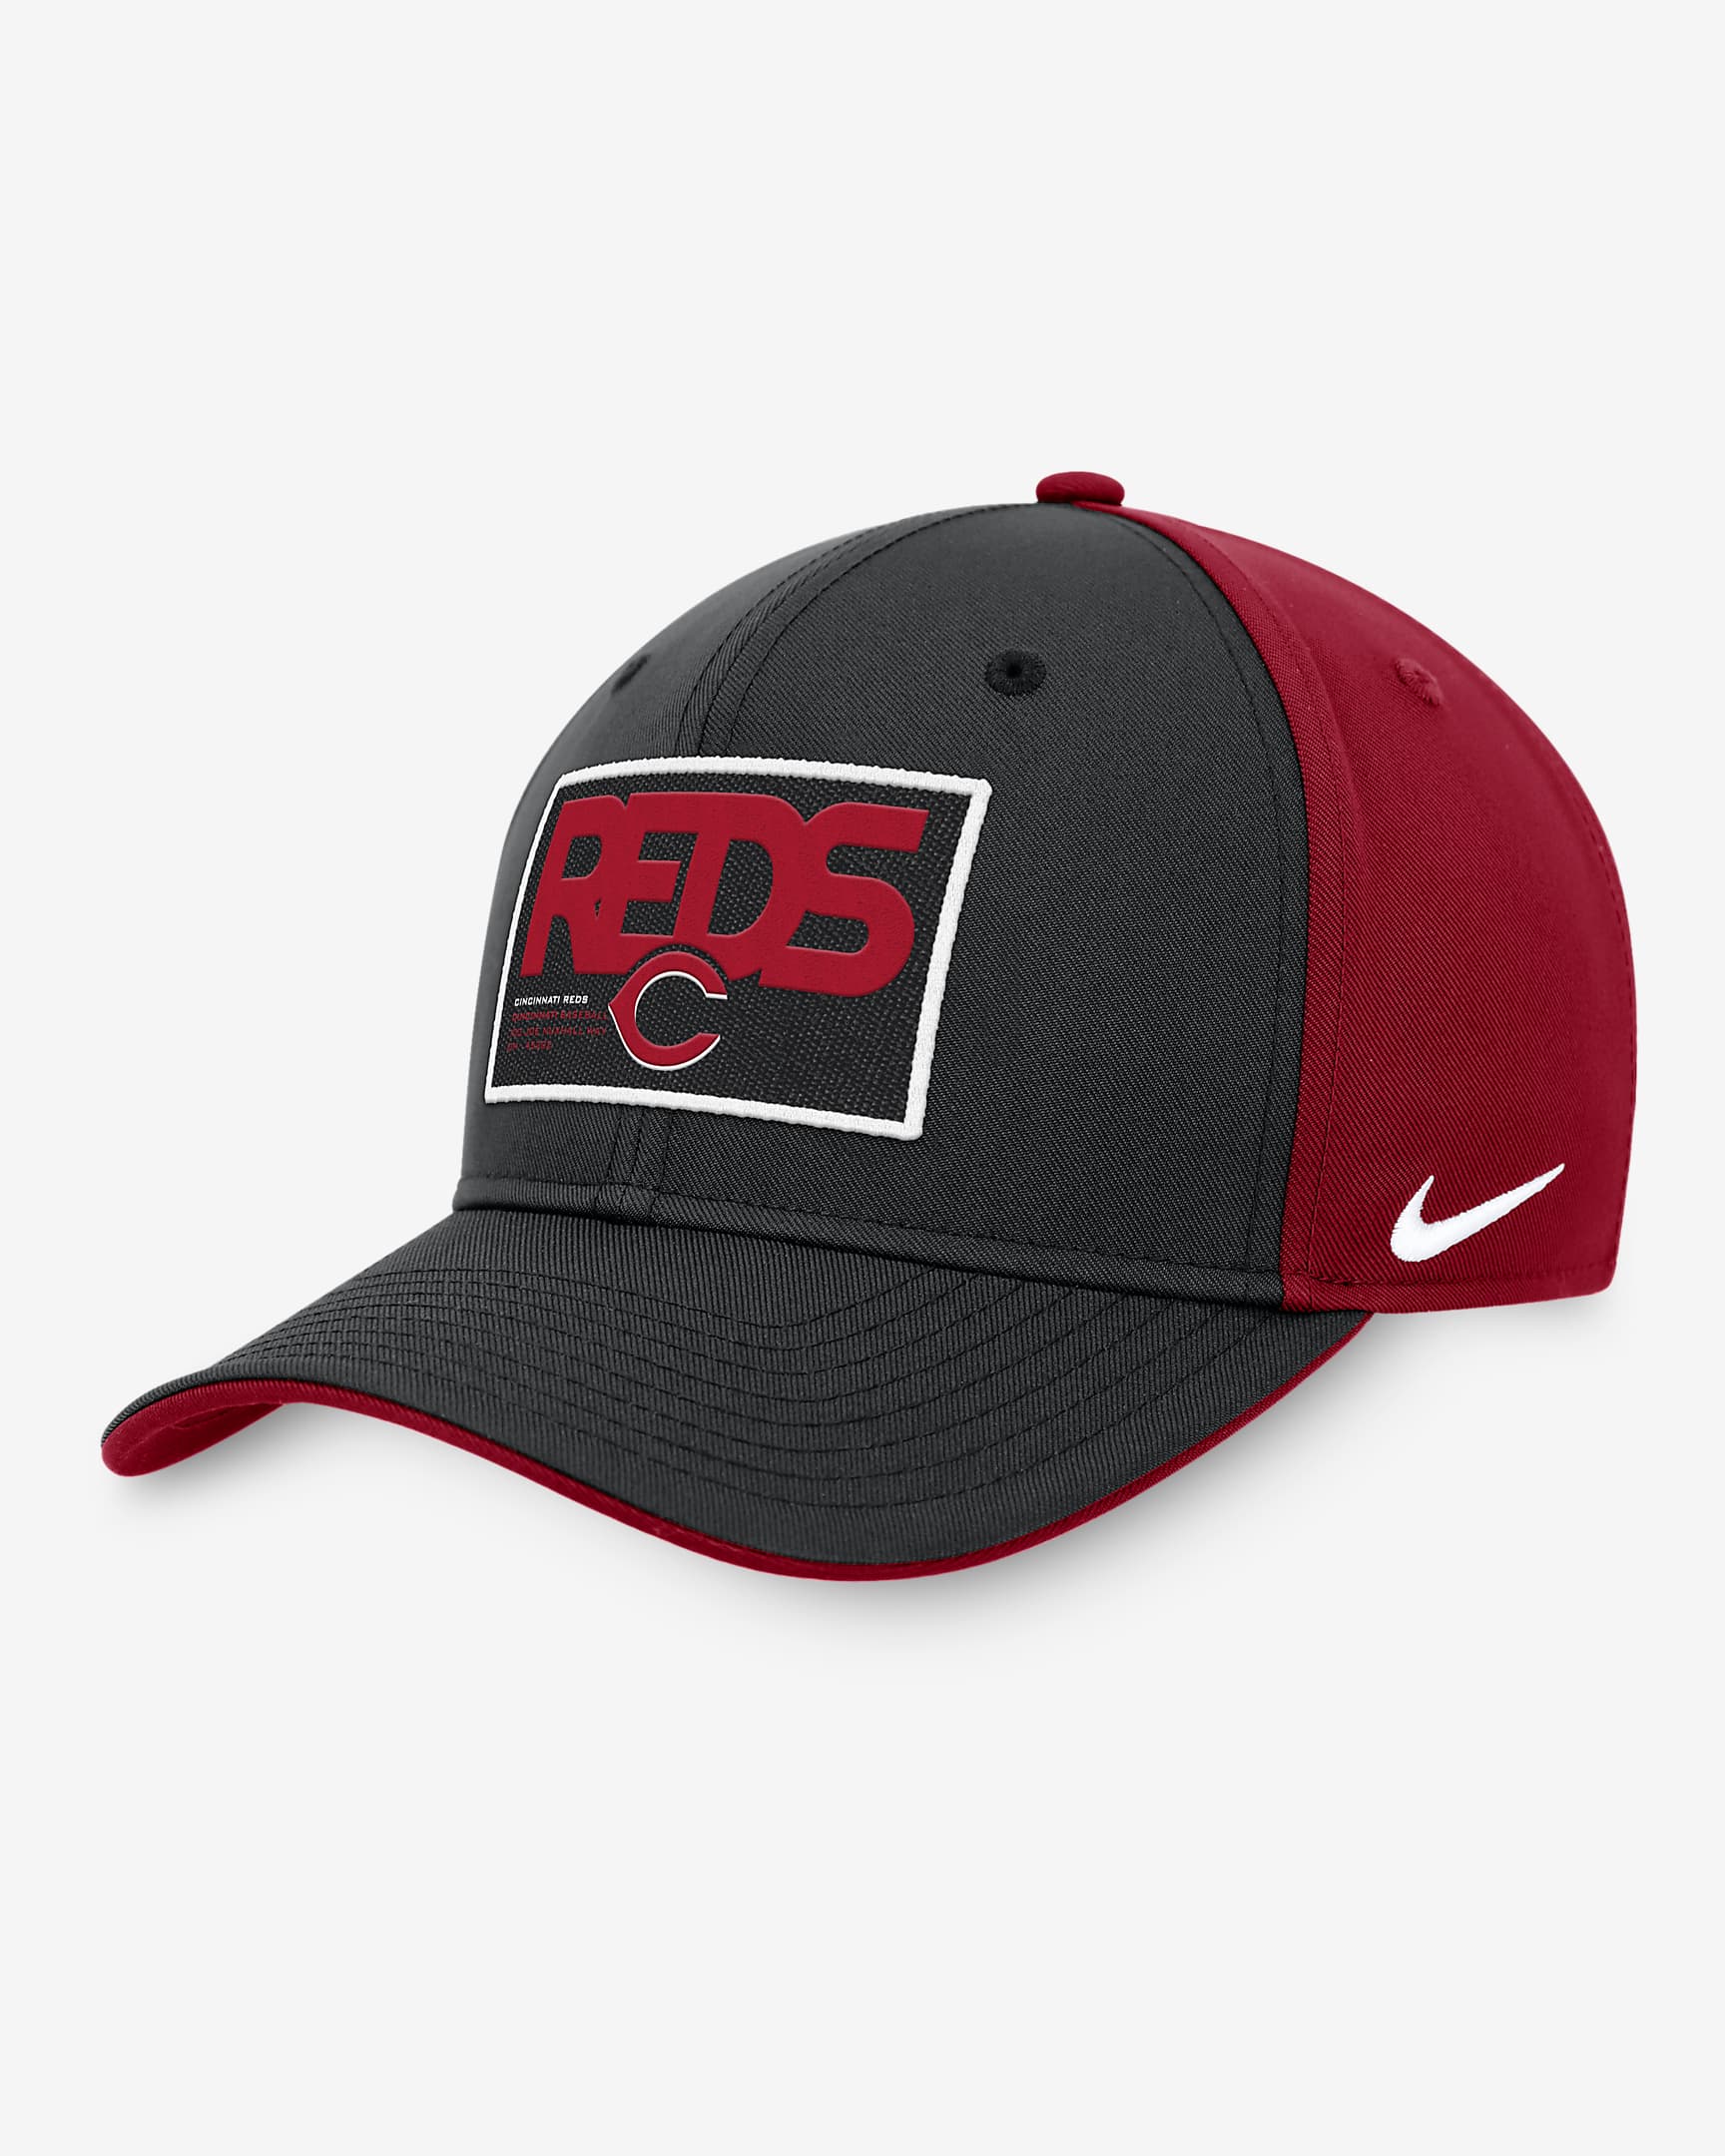 Gorra ajustable Nike de la MLB para hombre Cincinnati Reds Classic99 ...